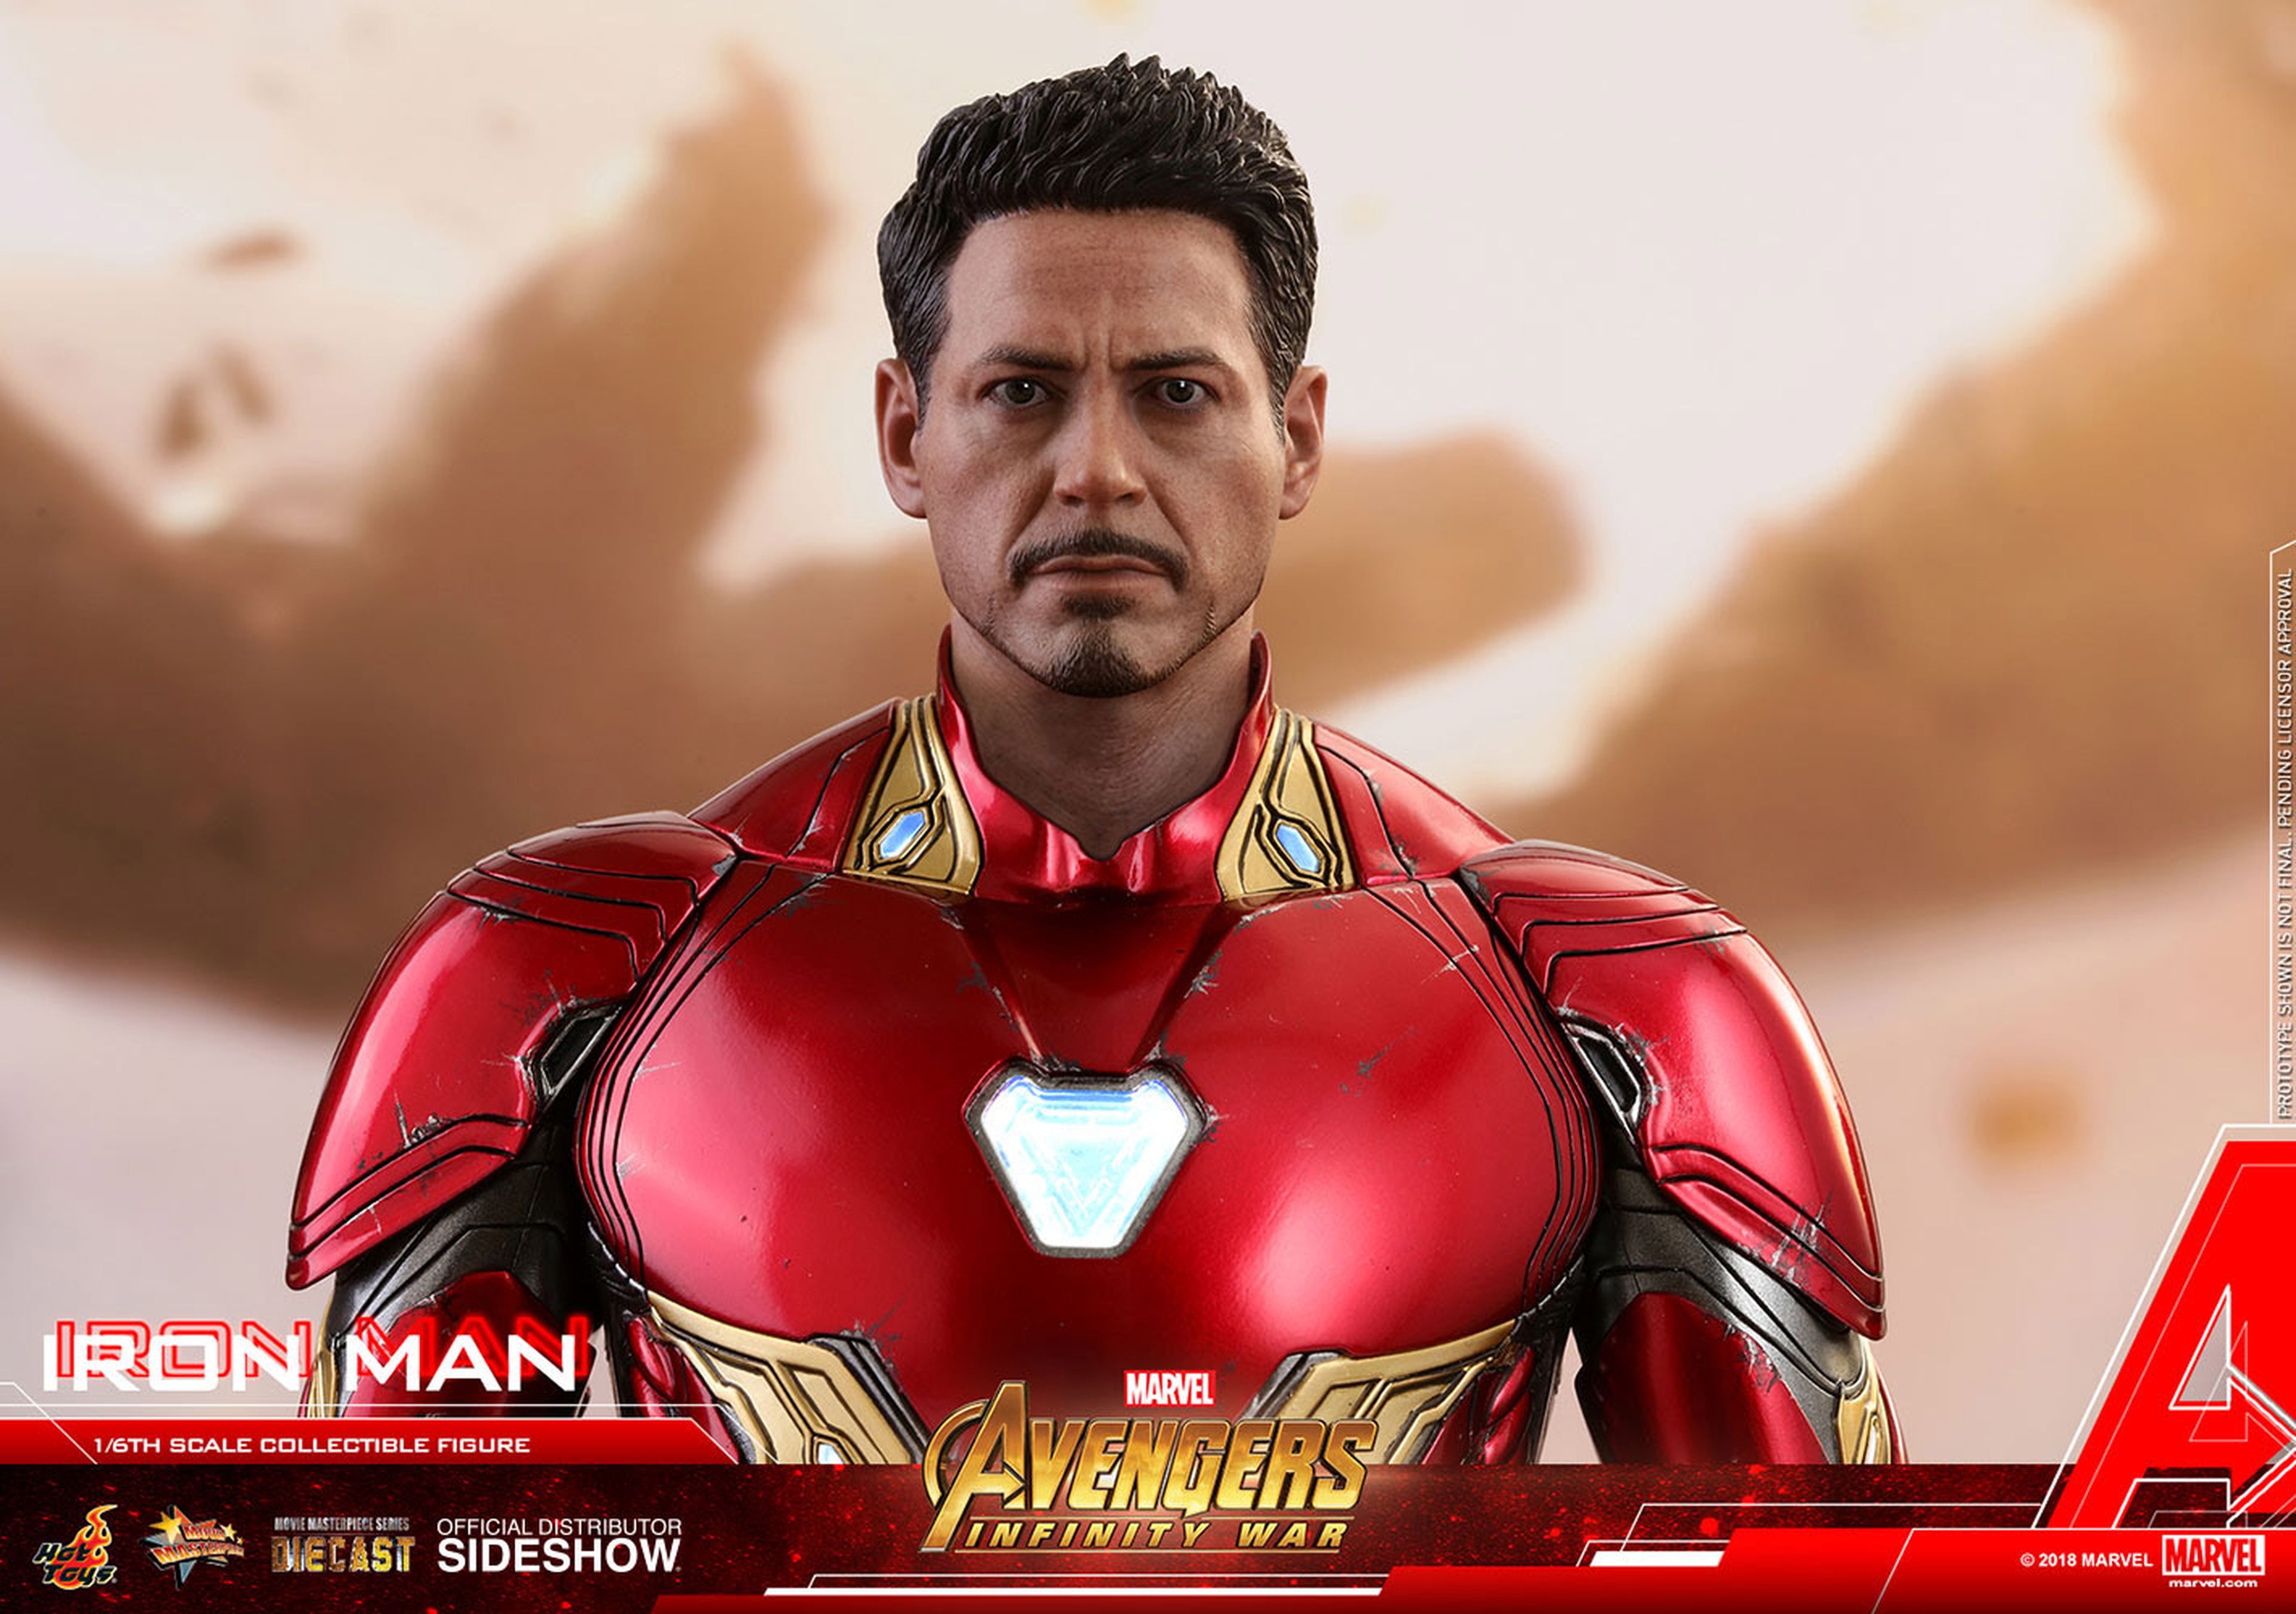 Iron Man Vengadores: Infinity War. Hot Toys